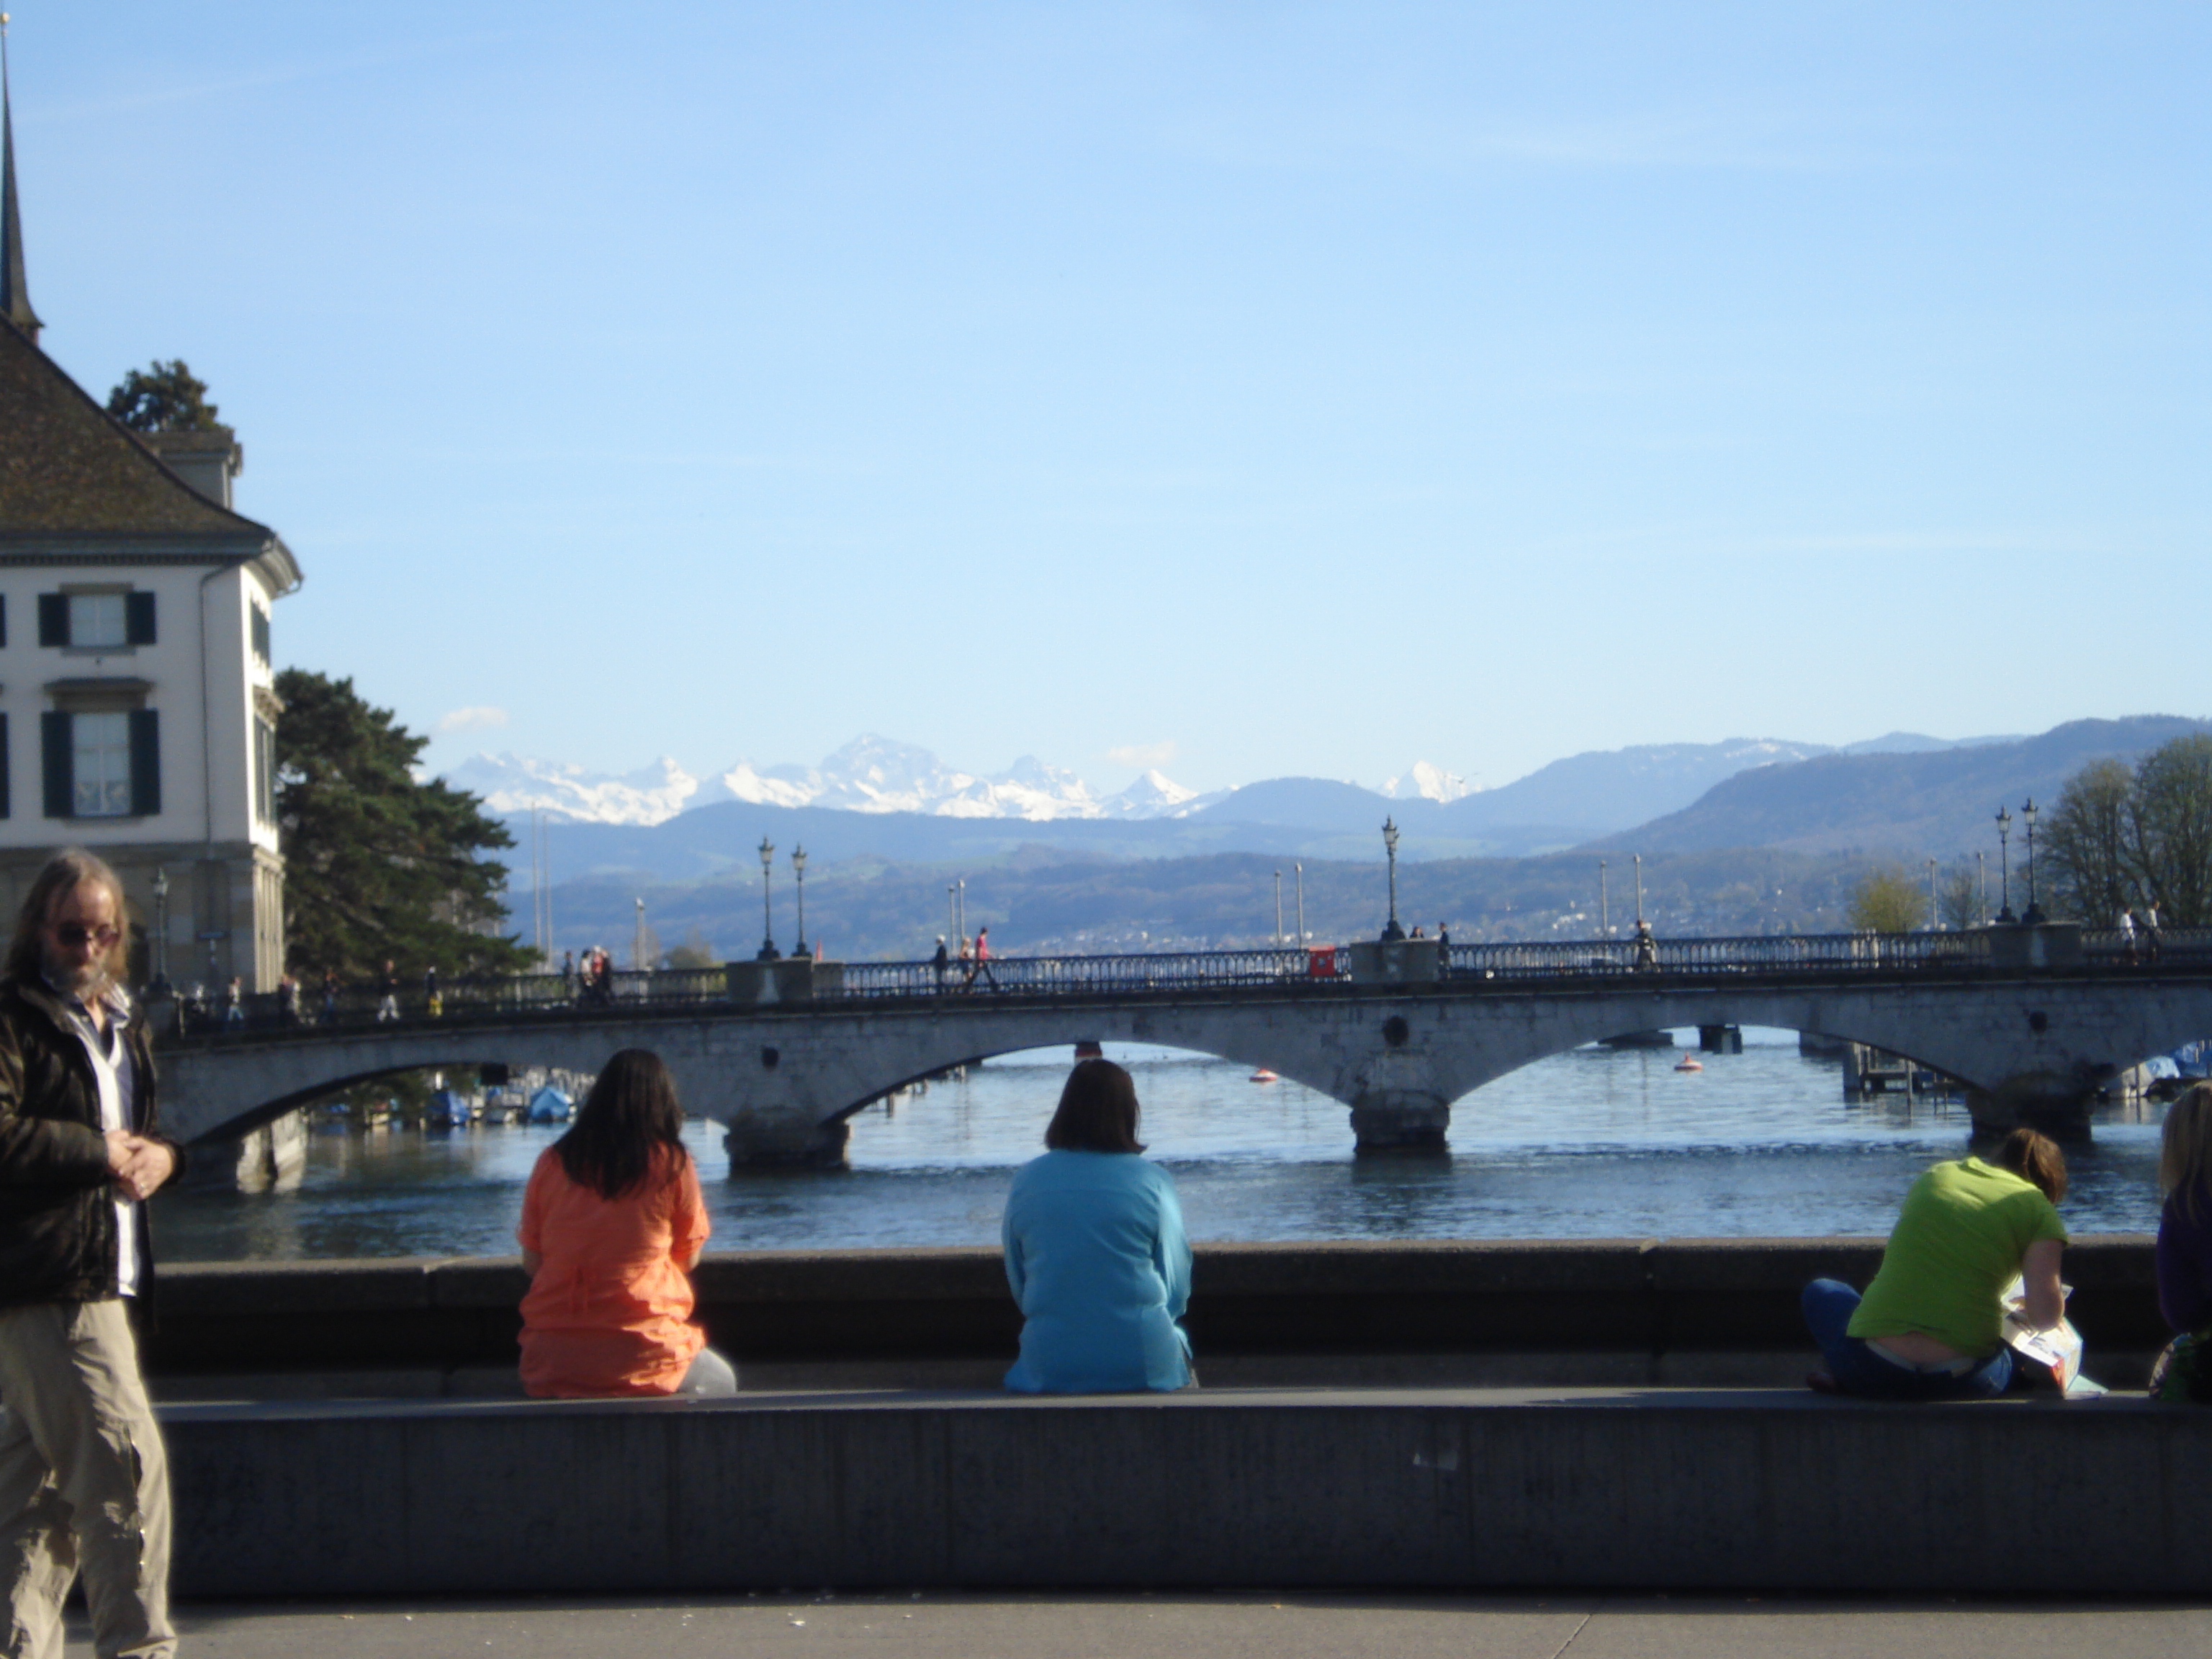 Цюрих гид, индивидуальные экскурсии с гидом по Швейцарии, гид в Лихтенштейне